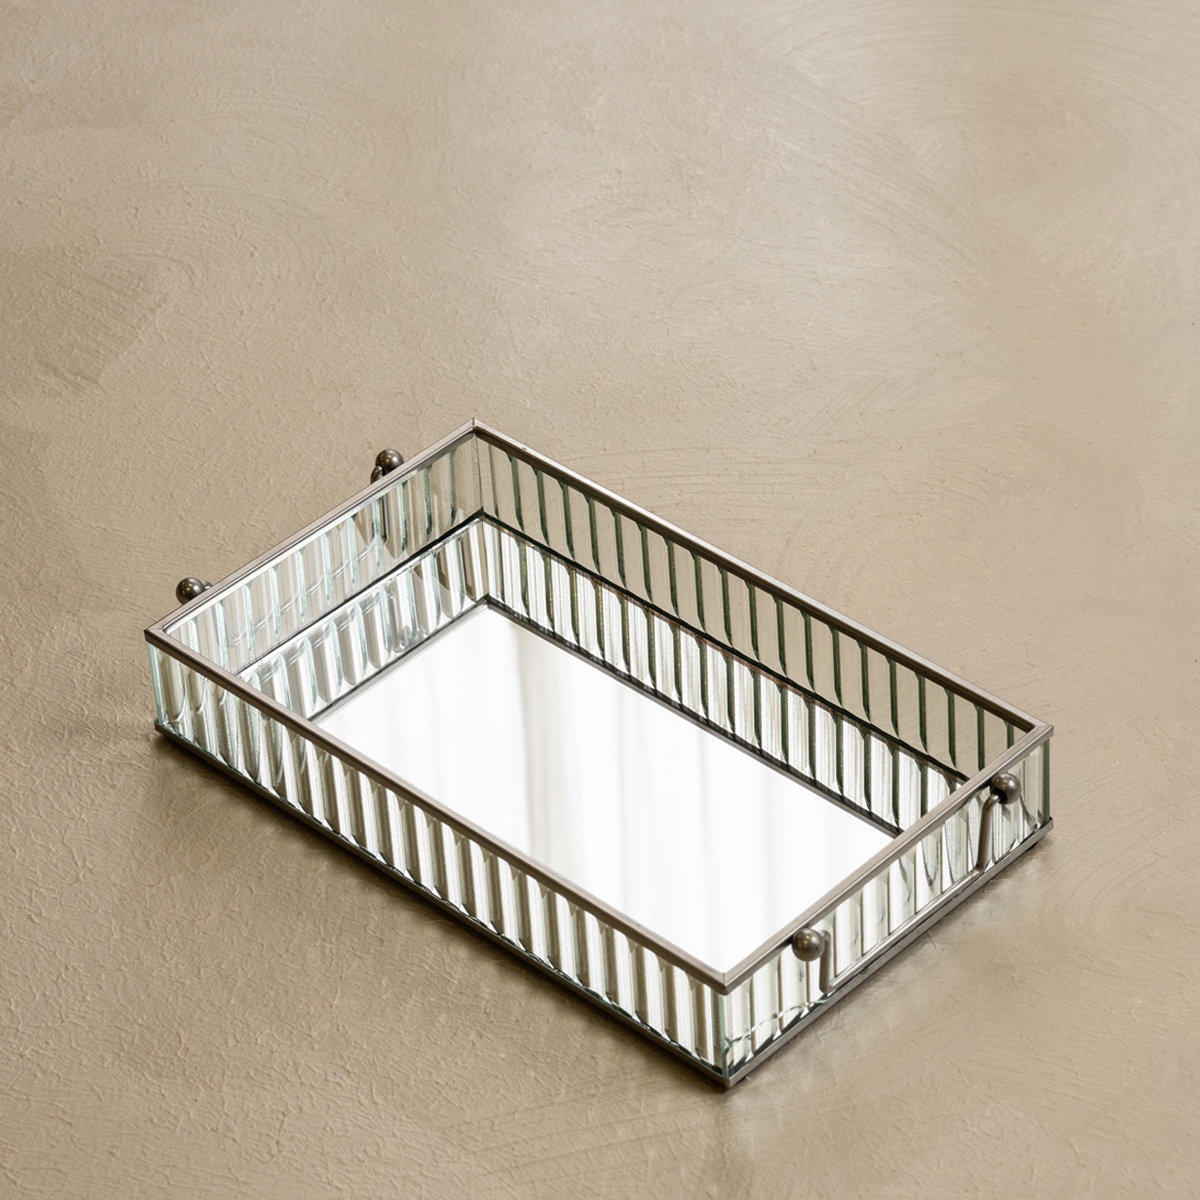 Buy Ribbed mirror deco tray silver 27x15x4. 5 cm in Kuwait